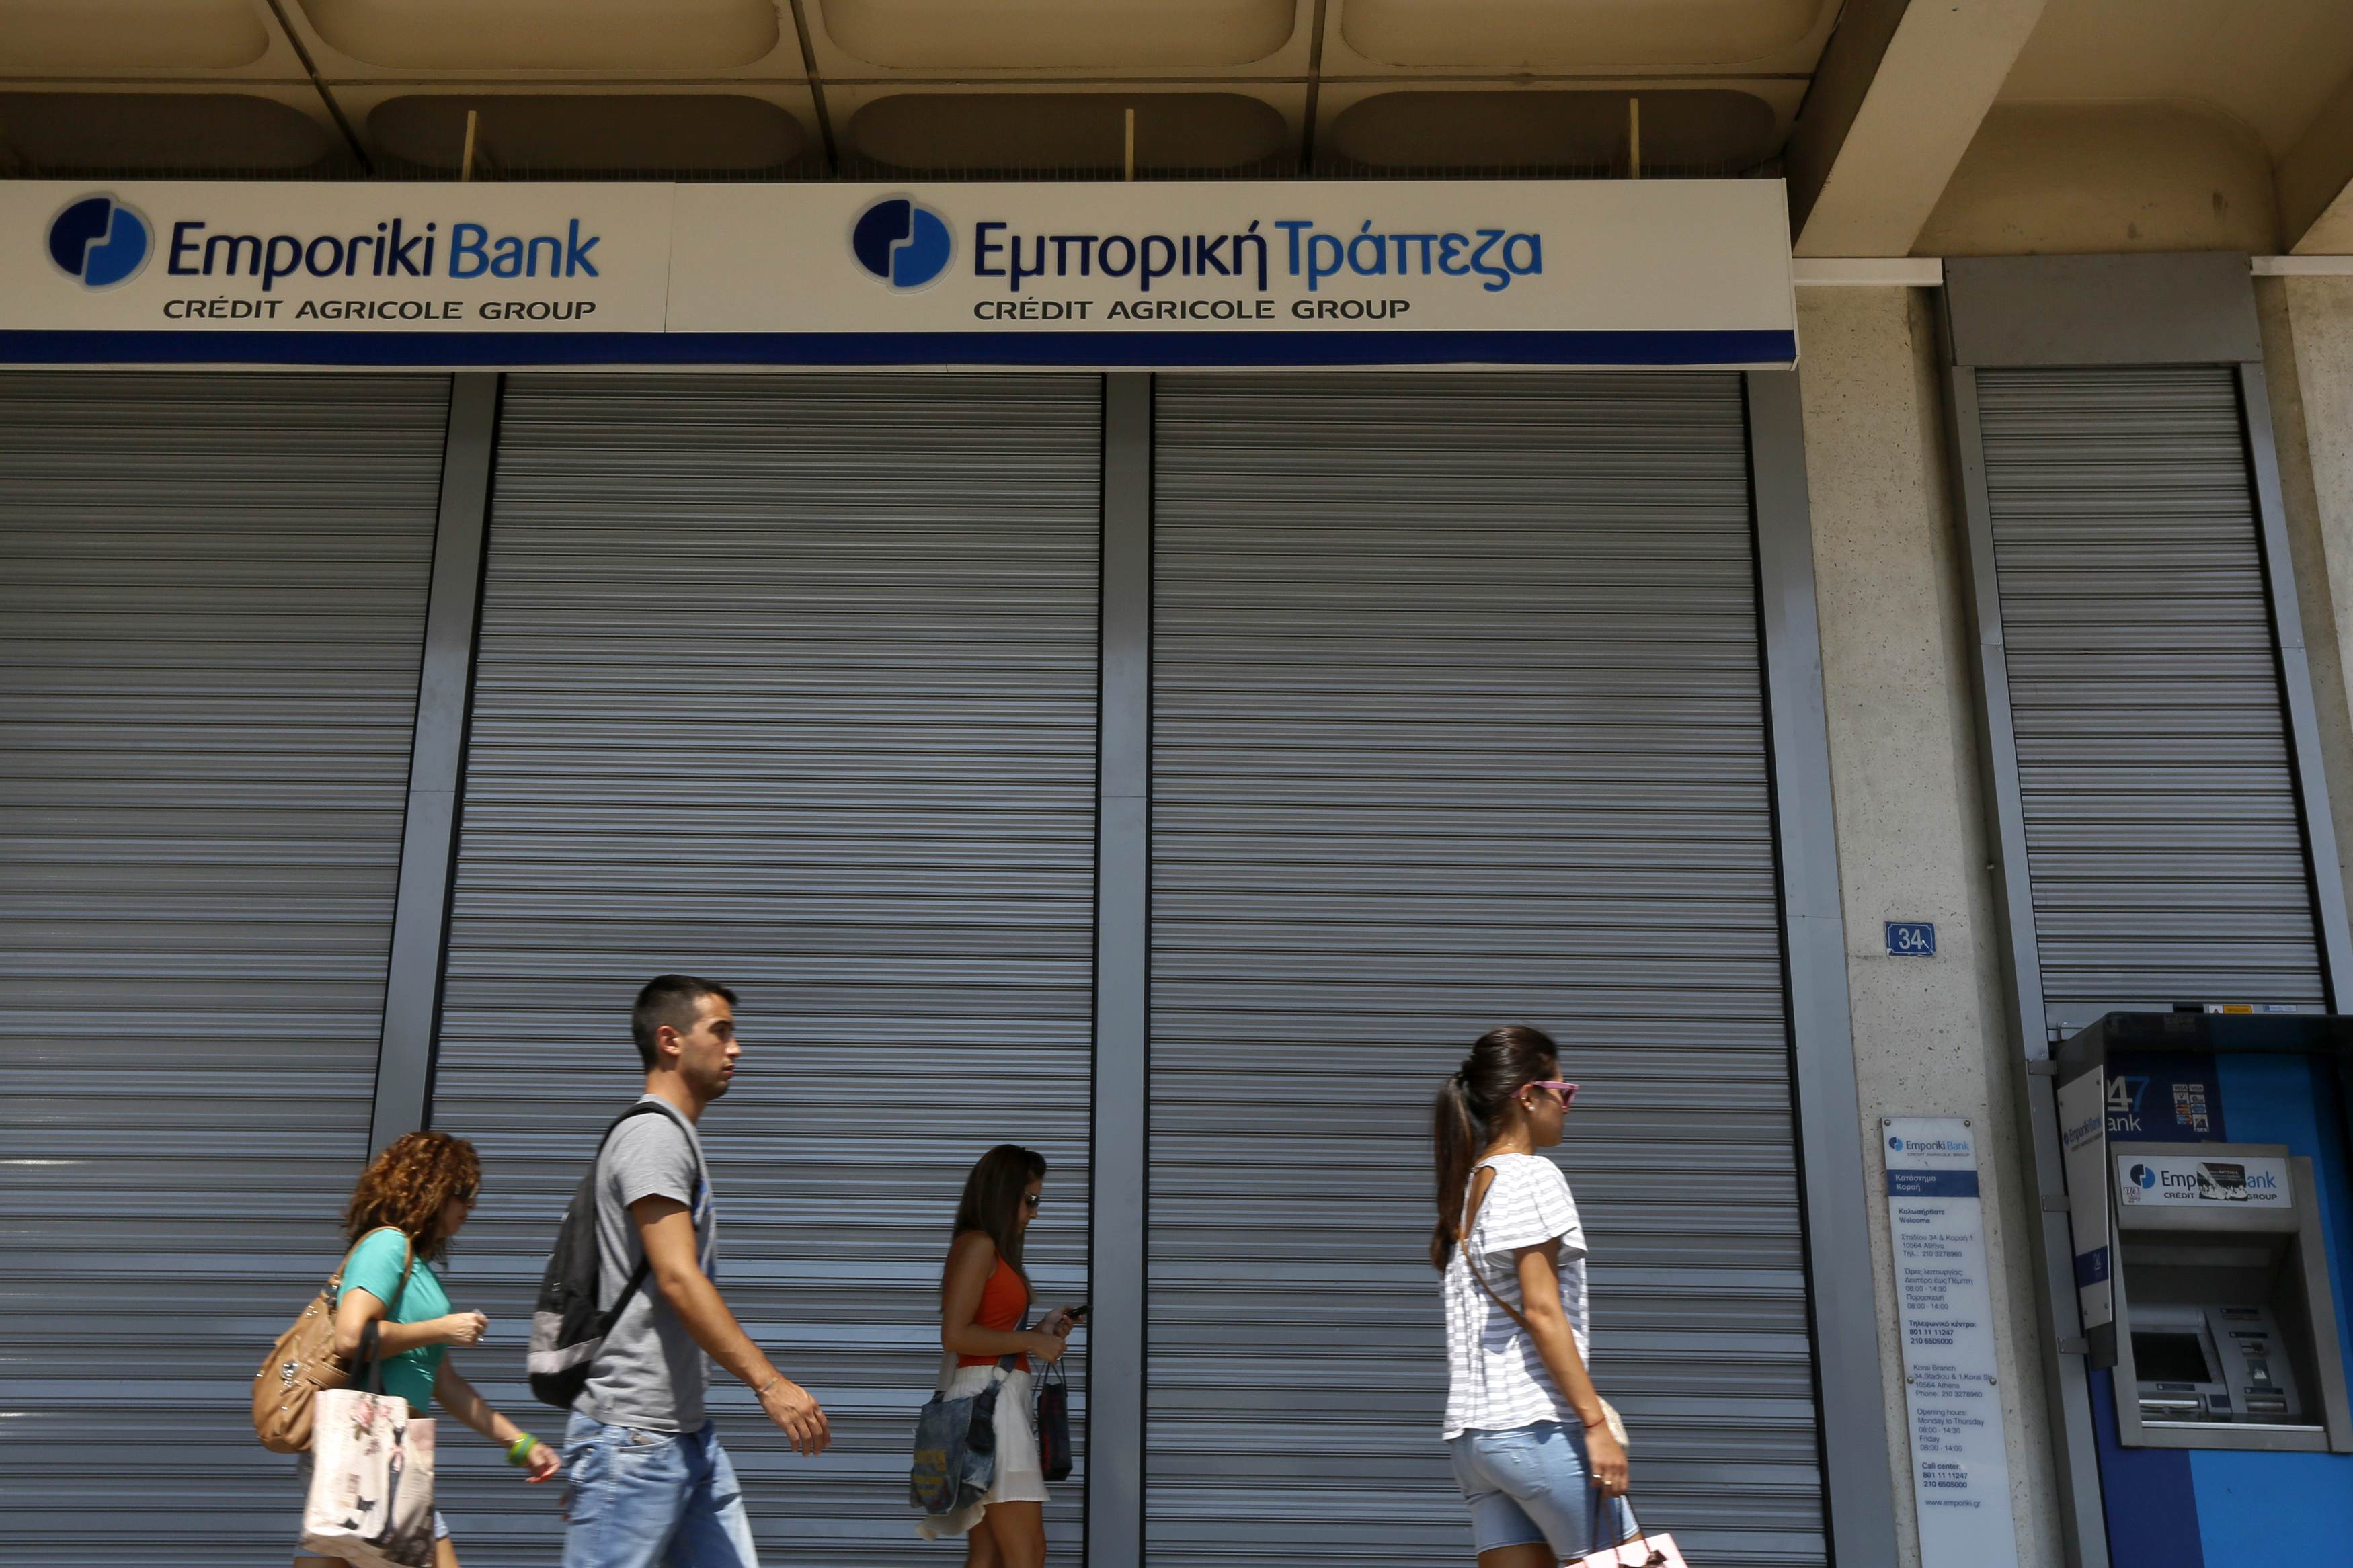 Ντέρμπι Εθνικής, Alpha Bank και Eurobank για την Εμπορική